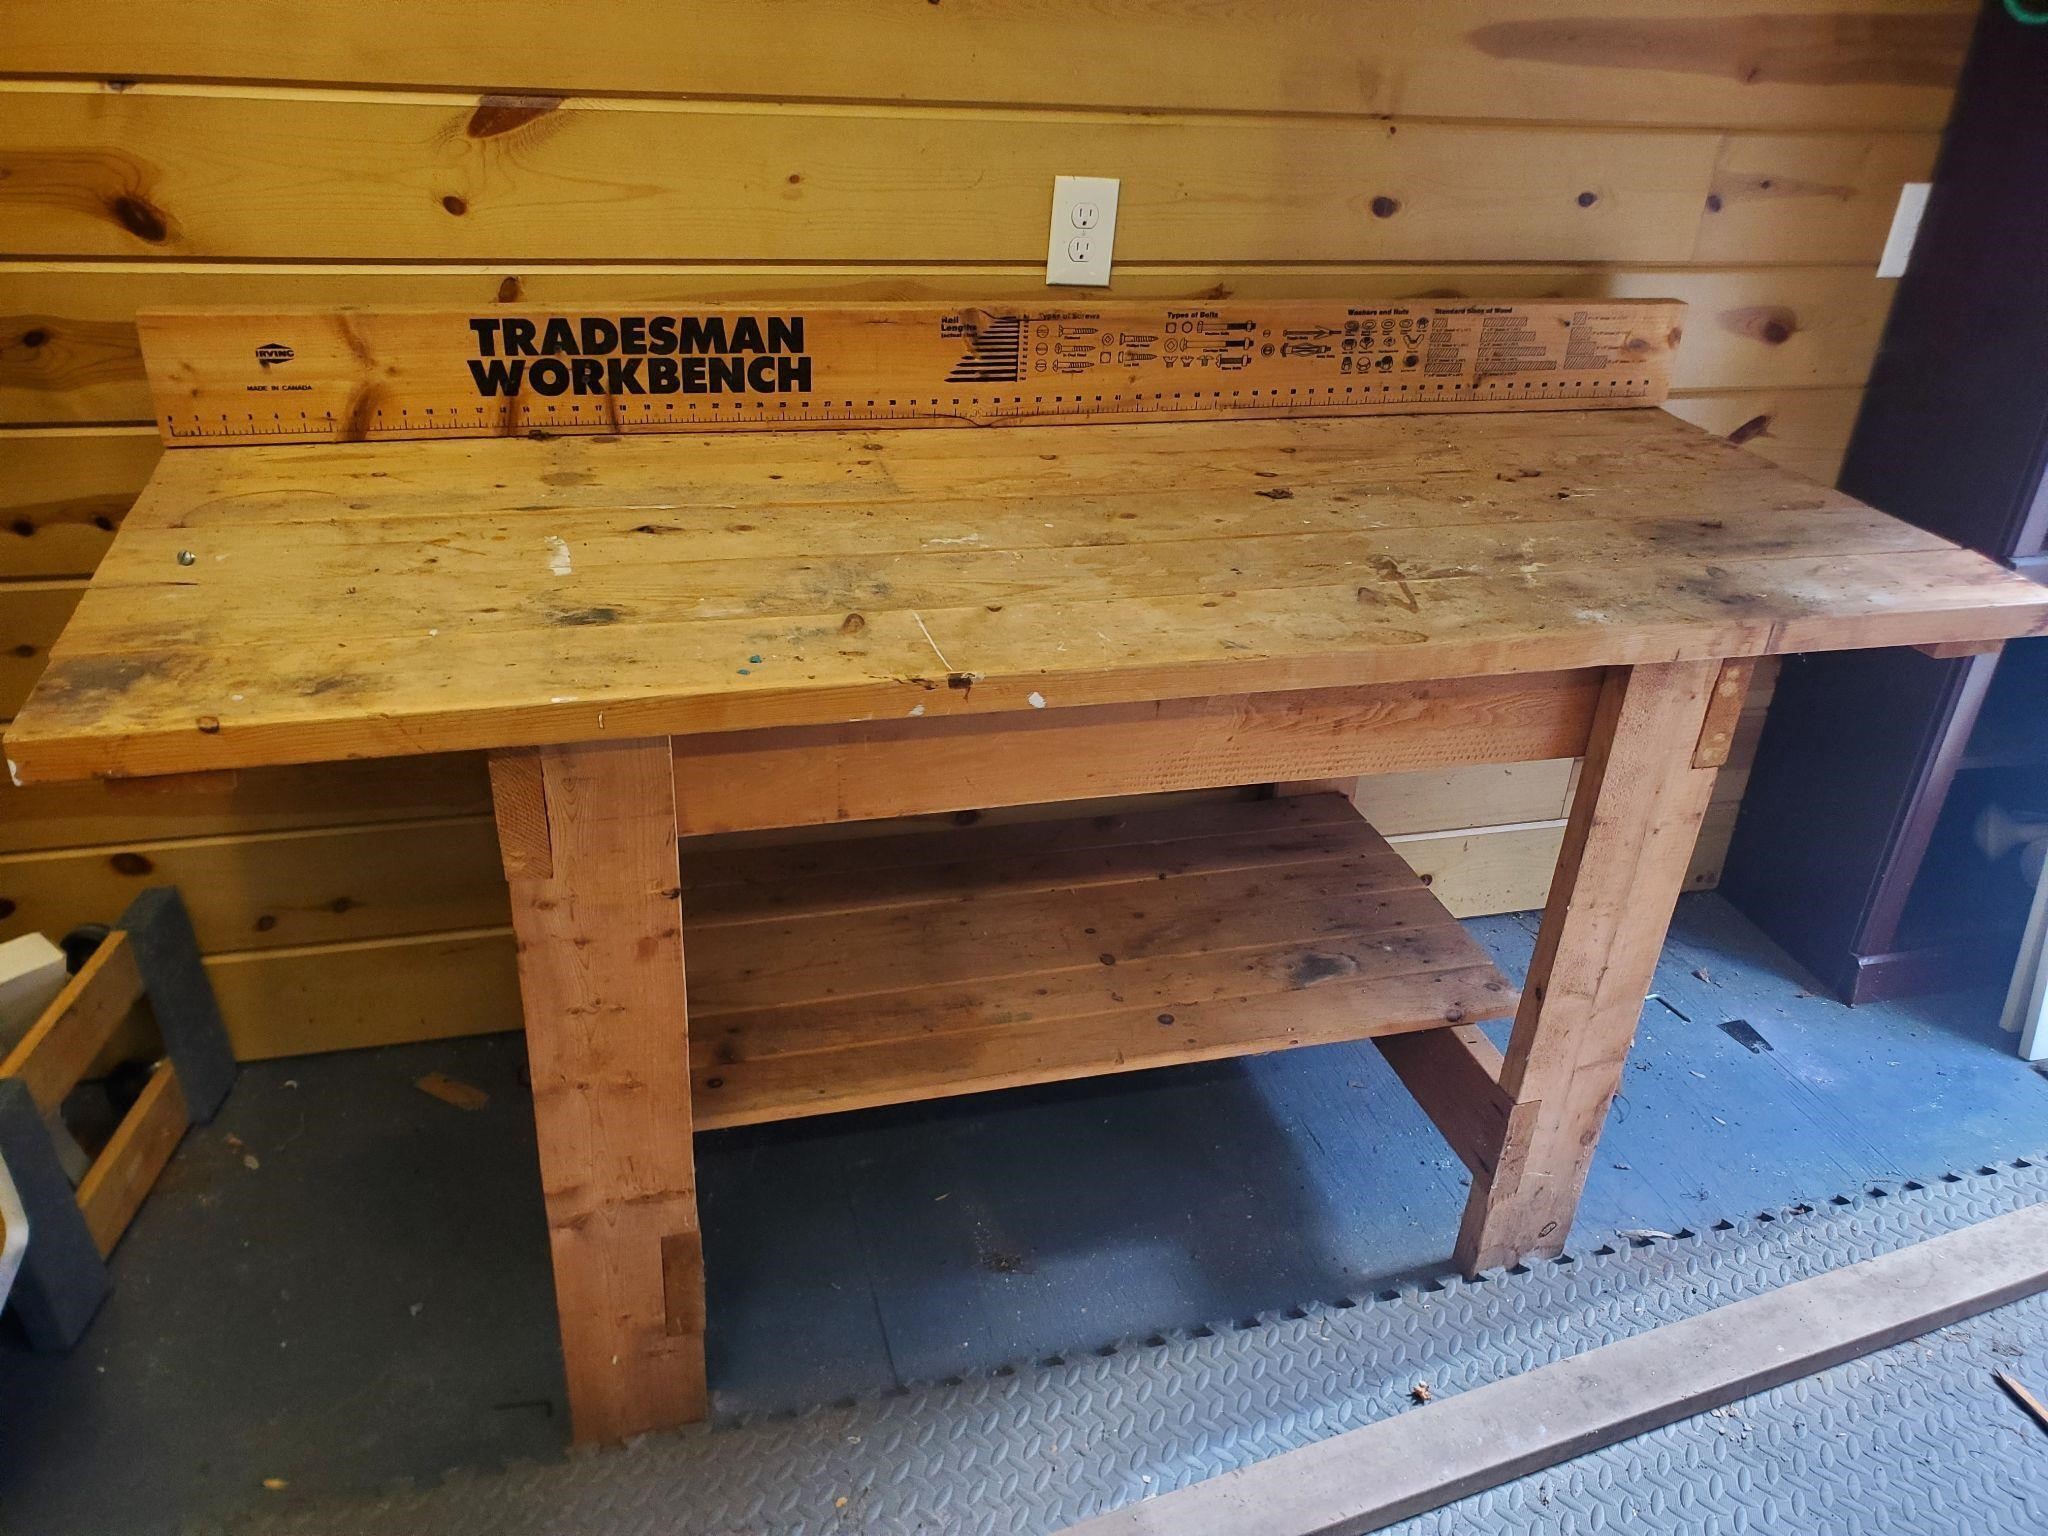 Tradesmen work bench